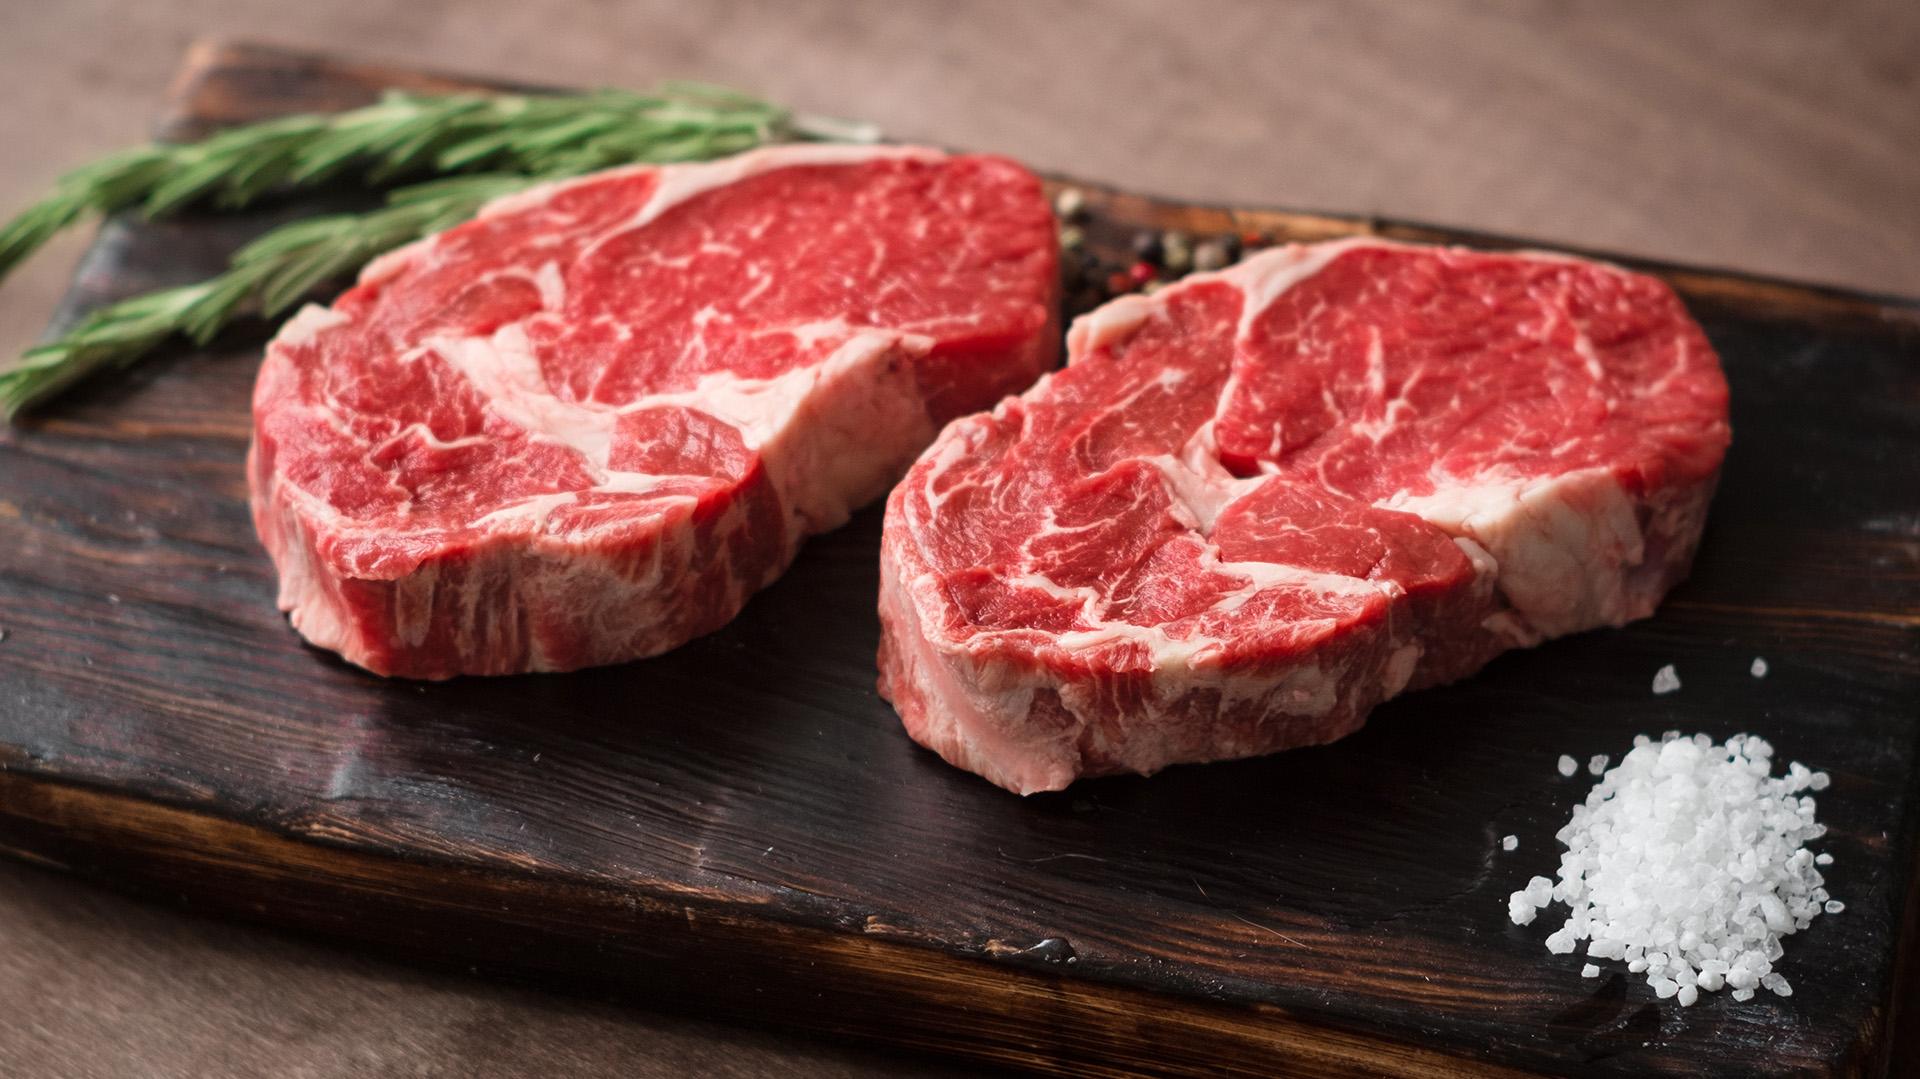 Los bistec pueden ser cultivados con distinttas proporciones de carne y grasas para sastifacer los gustos de distitnso mercados
(Shutterstock.com)